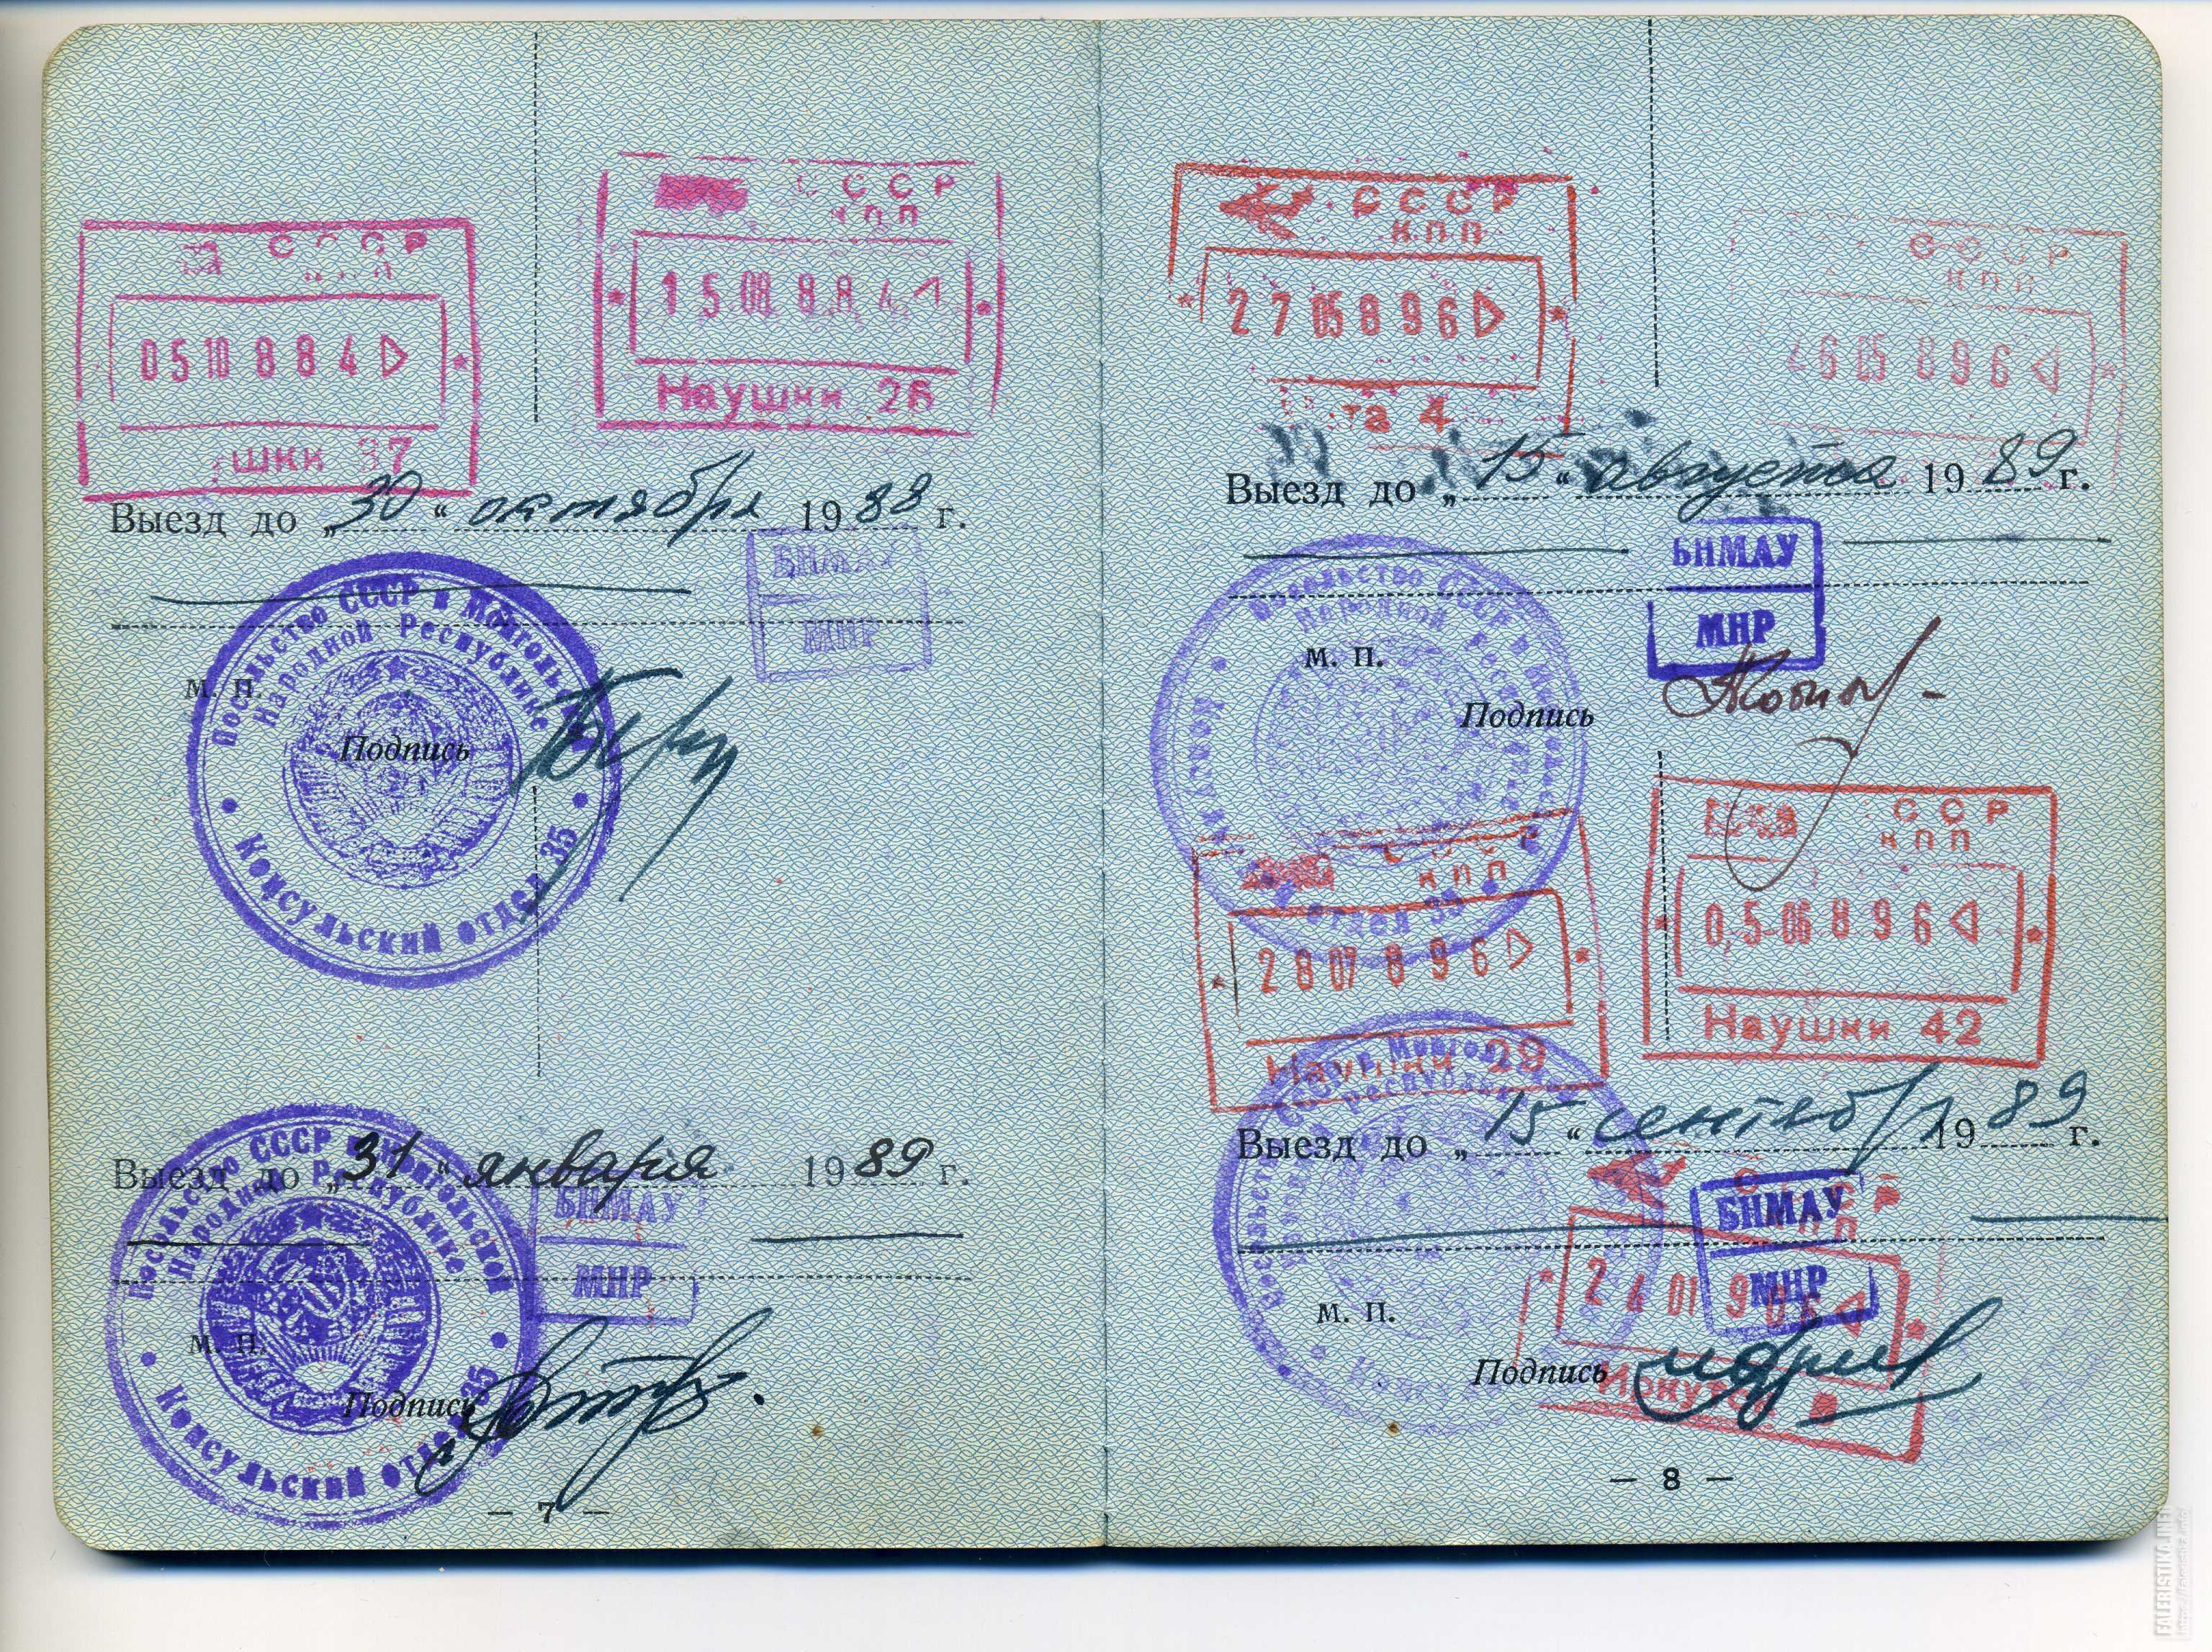 Служебный паспорт СССР